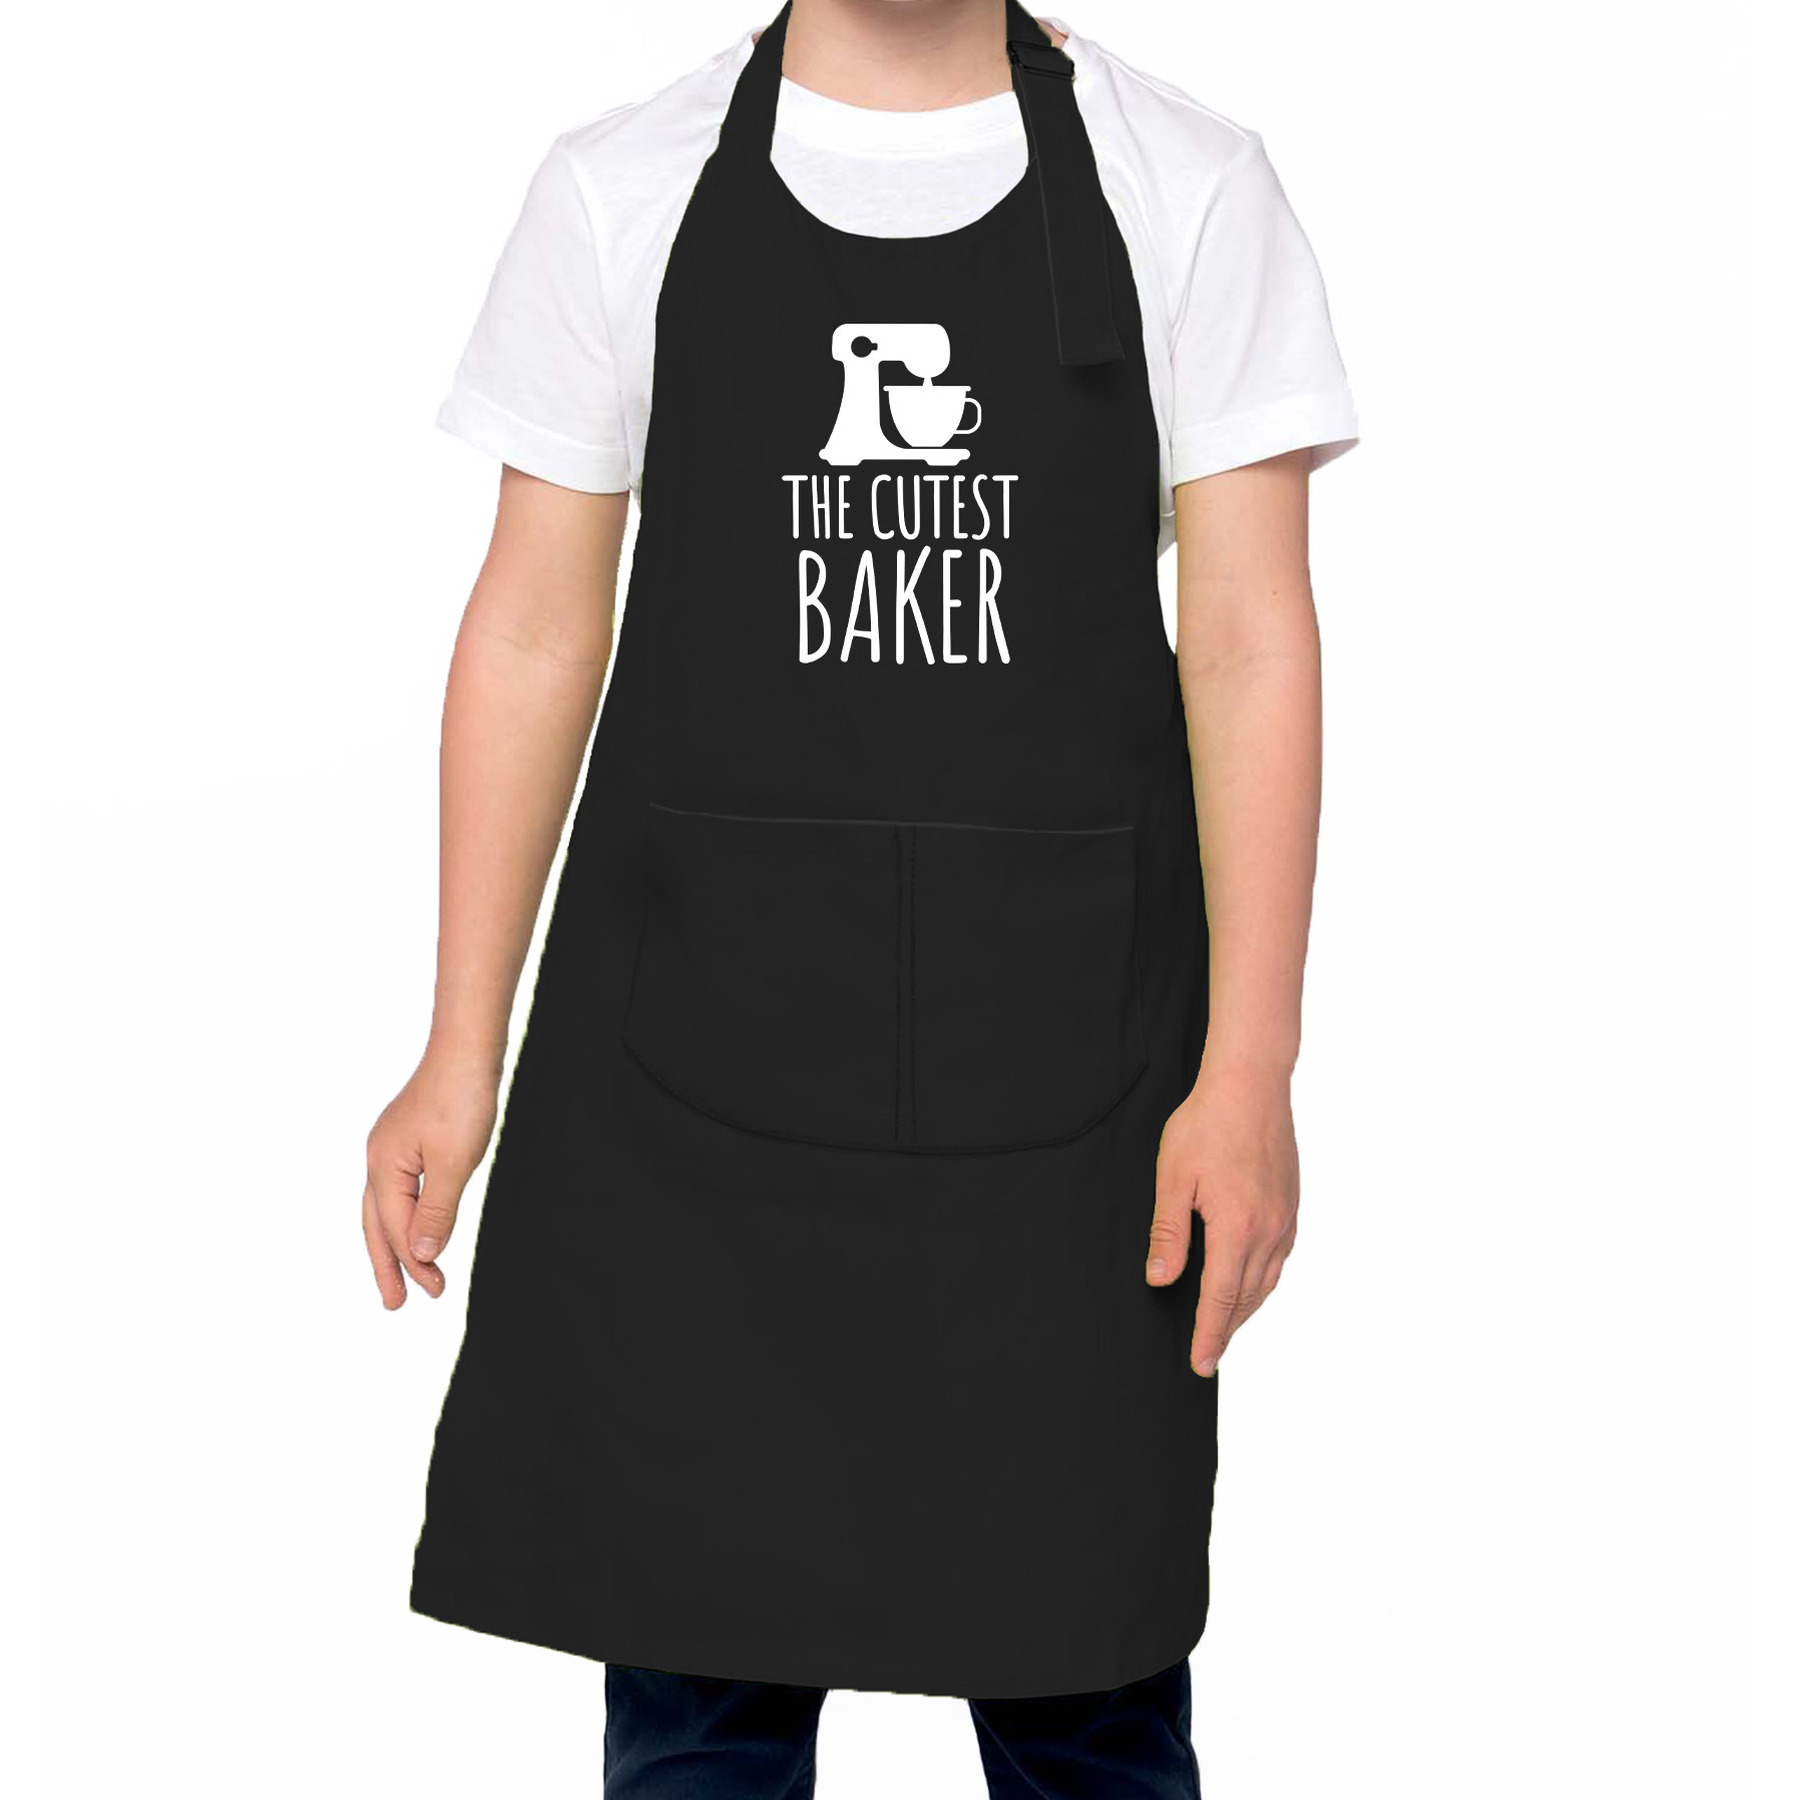 The cutest baker keukenschort- kinder bakschort zwart voor jongens en meisjes Bakken met kinderen